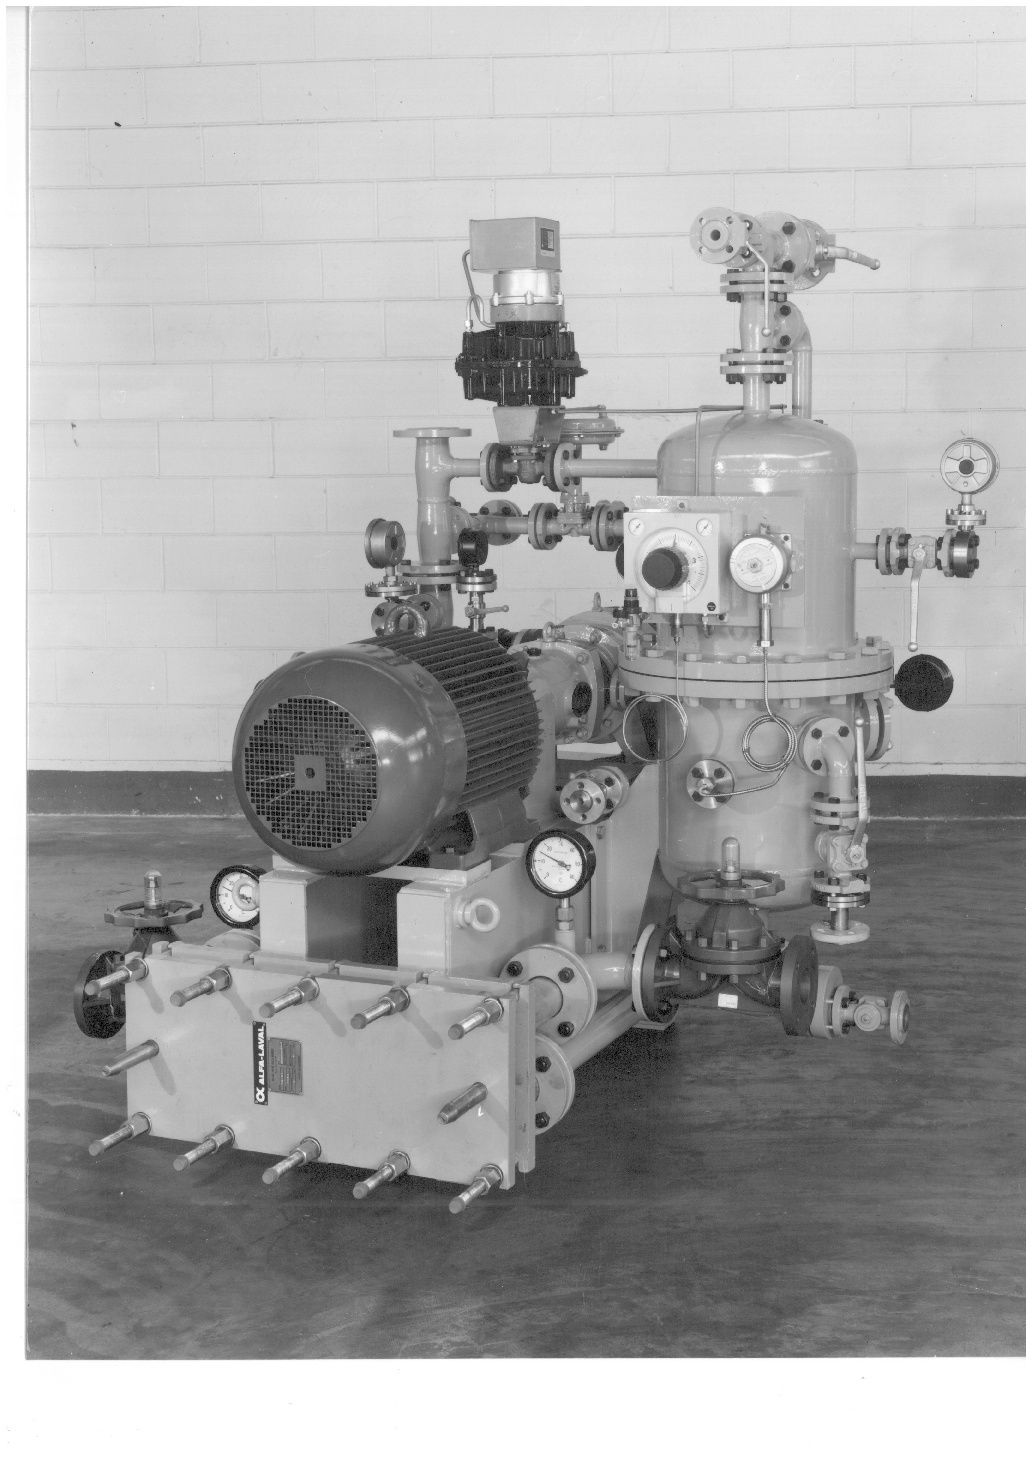 加罗液环压缩机 1988 年旧照